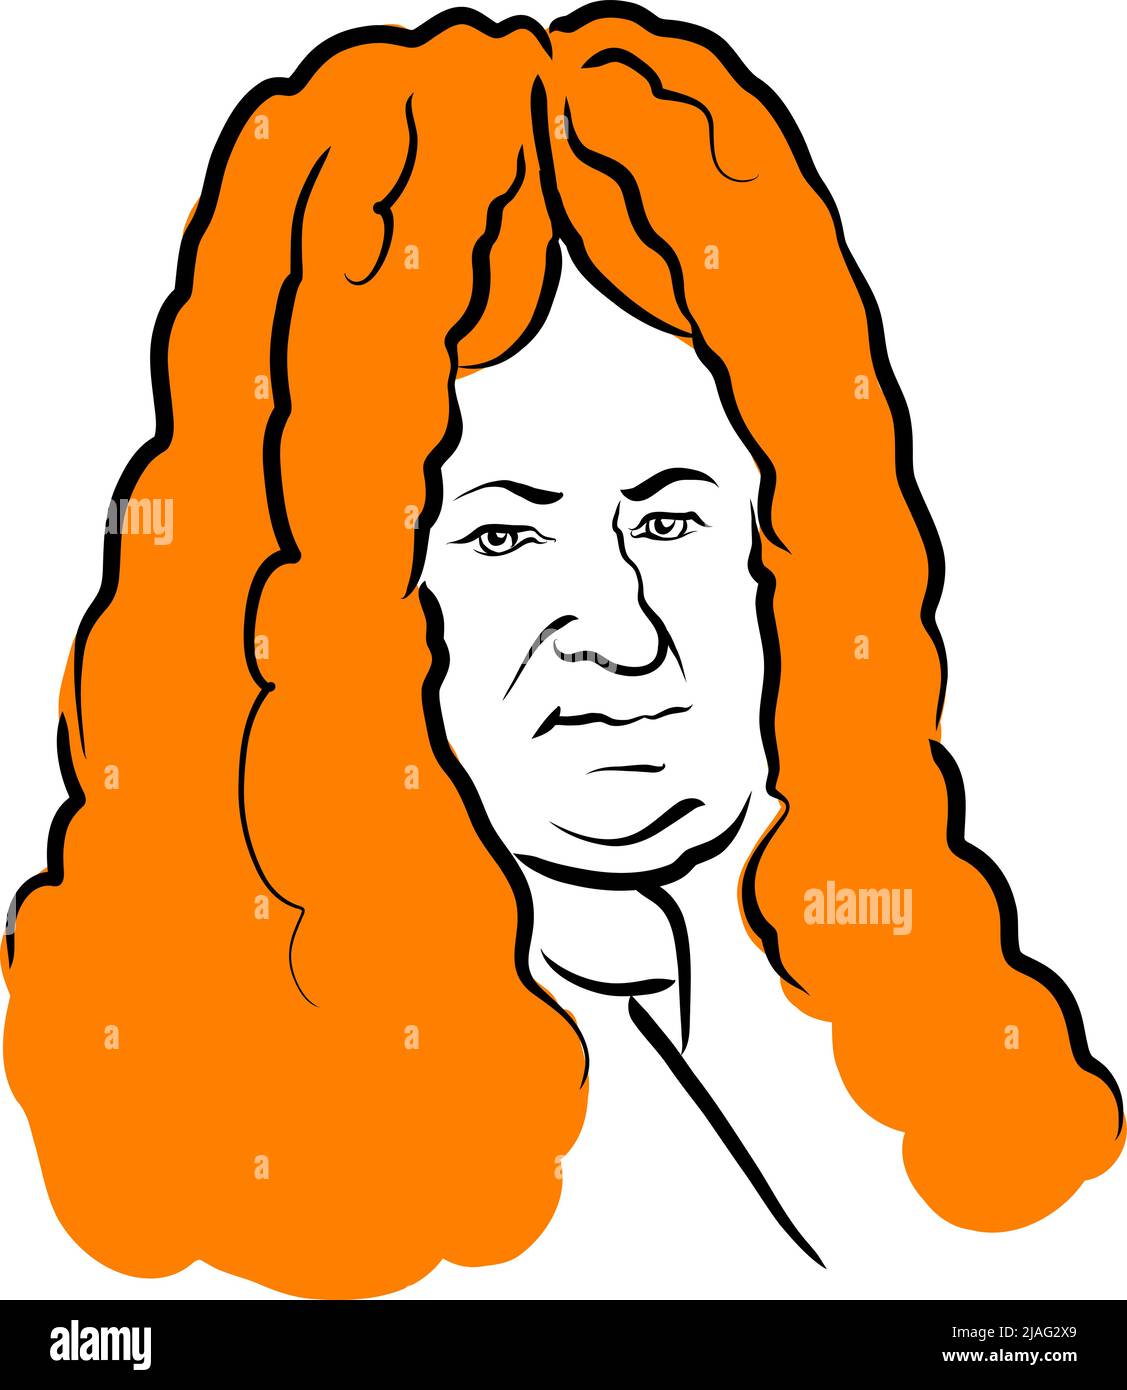 Gottfried Wilhelm Leibniz Vektor-Zeichnung mit Oberfläche für Haar. Handgezeichnete Skizze des Künstlers Knut Hebstreit. Zeichnung zur Verwendung auf beliebigen Marketing-p Stock Vektor